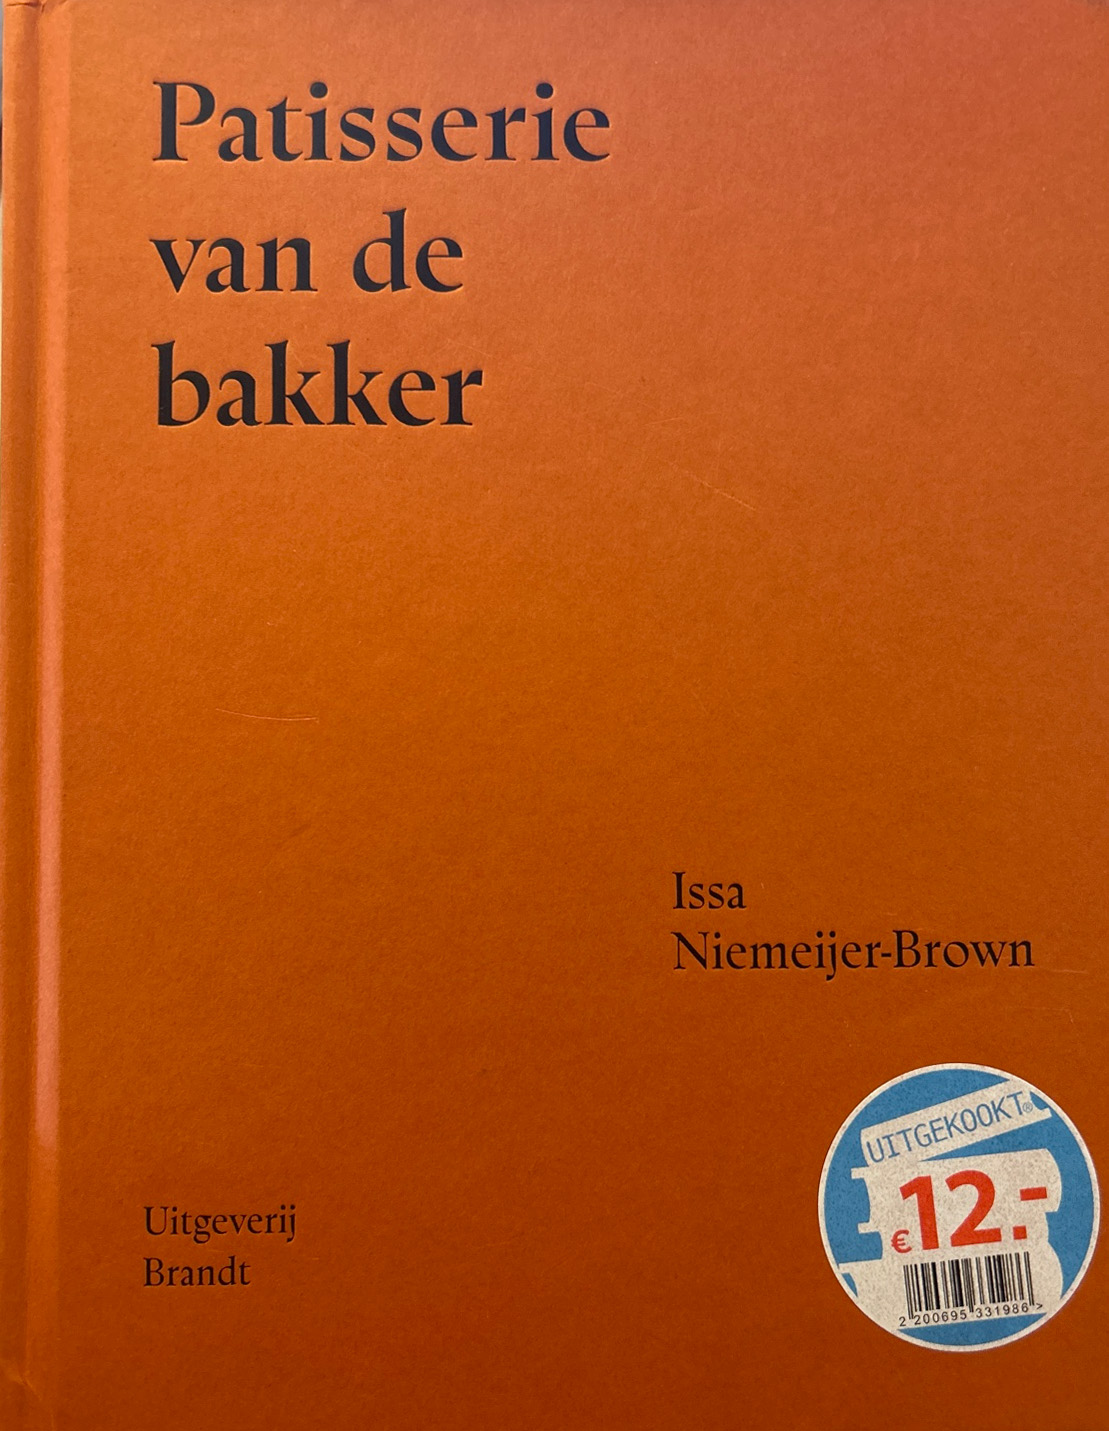 Patisserie van de bakker – Issa Niemeijer-Brown